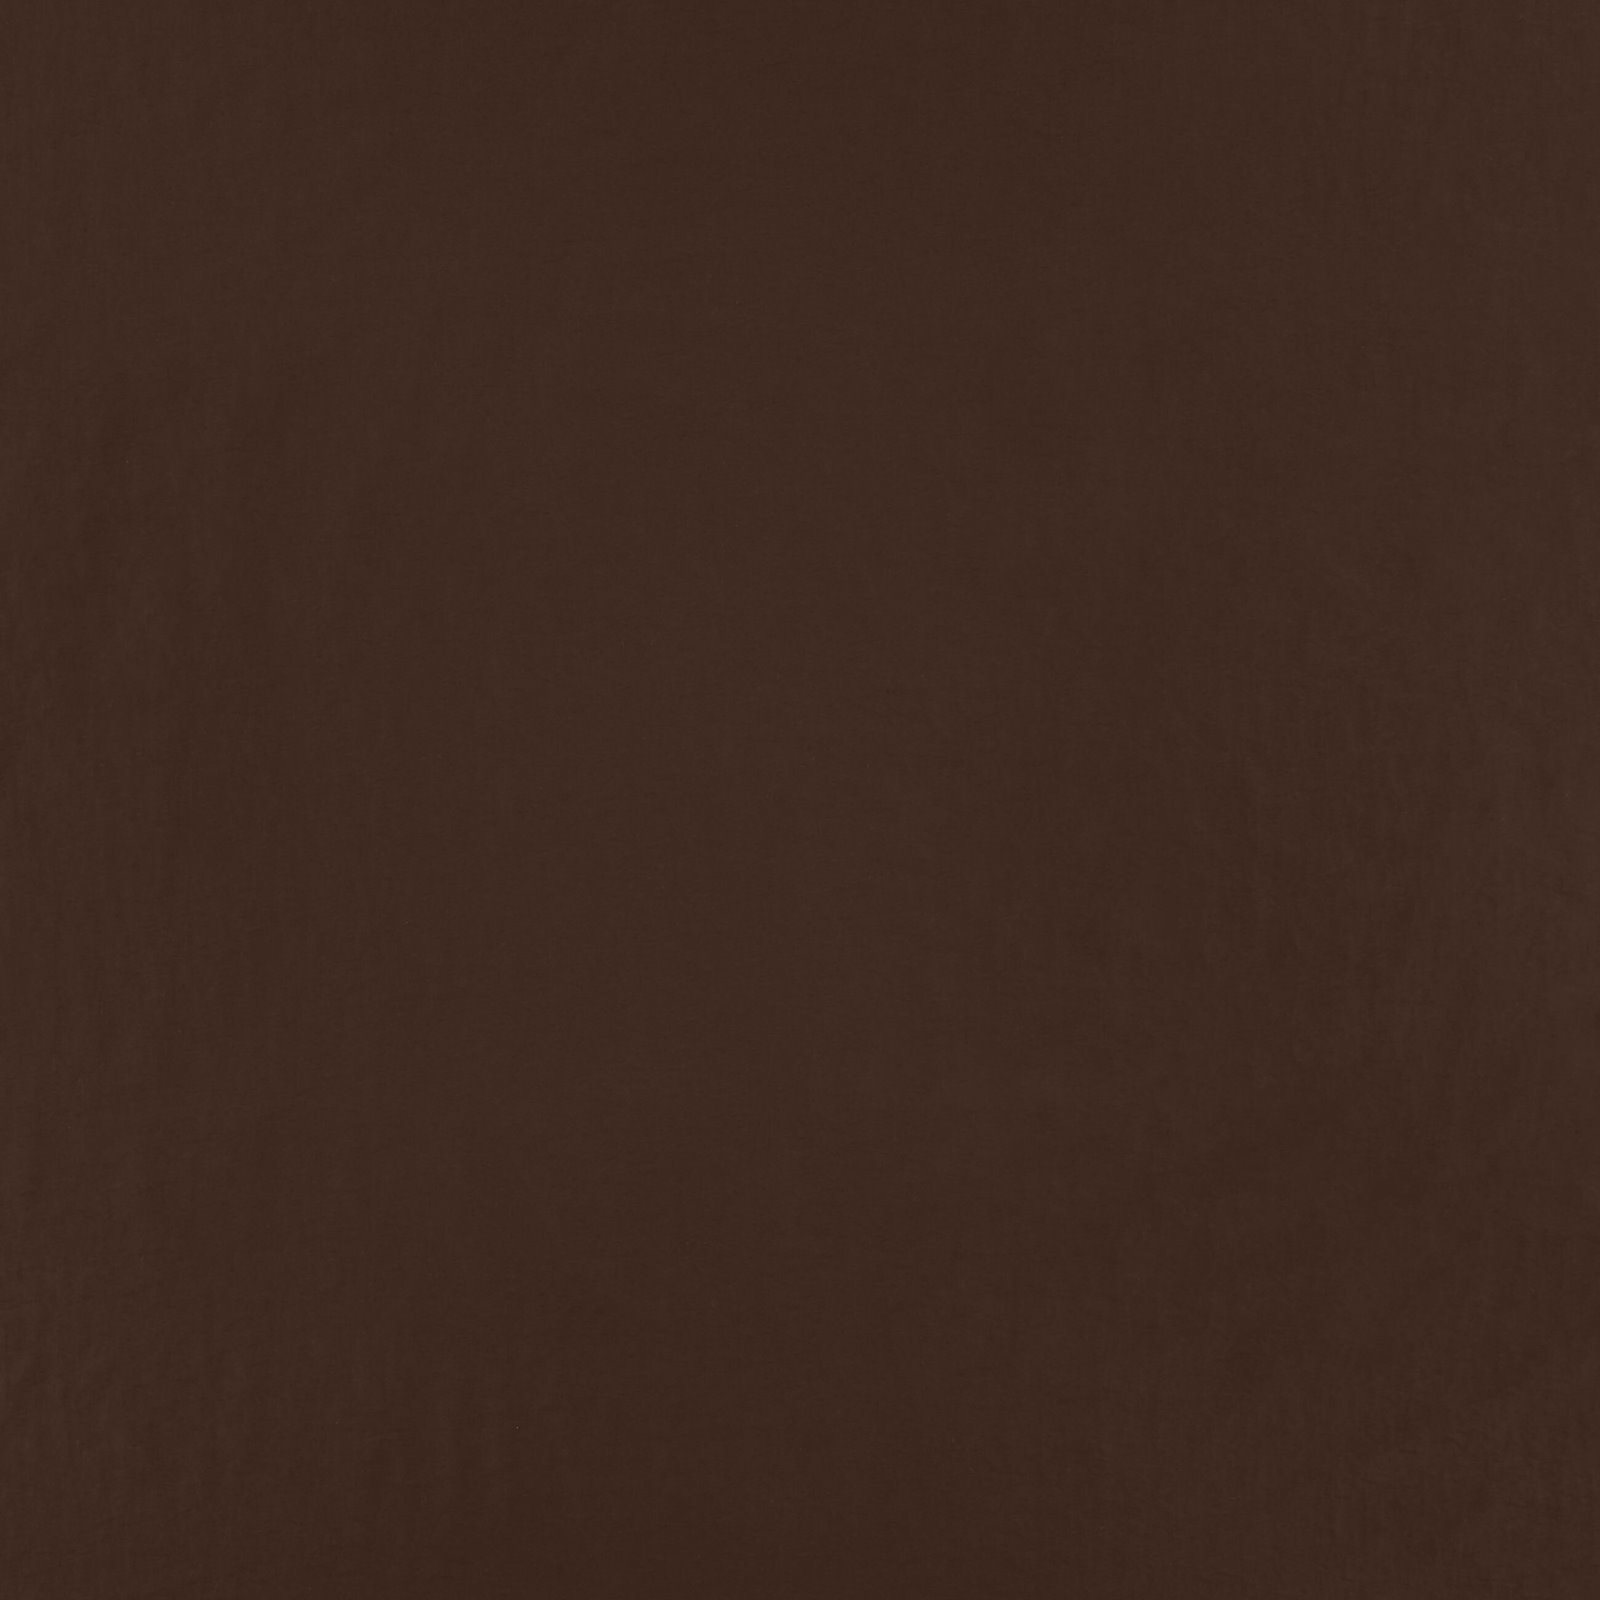 Vevet taslan med struktur mørk brun 560278_pack_solid